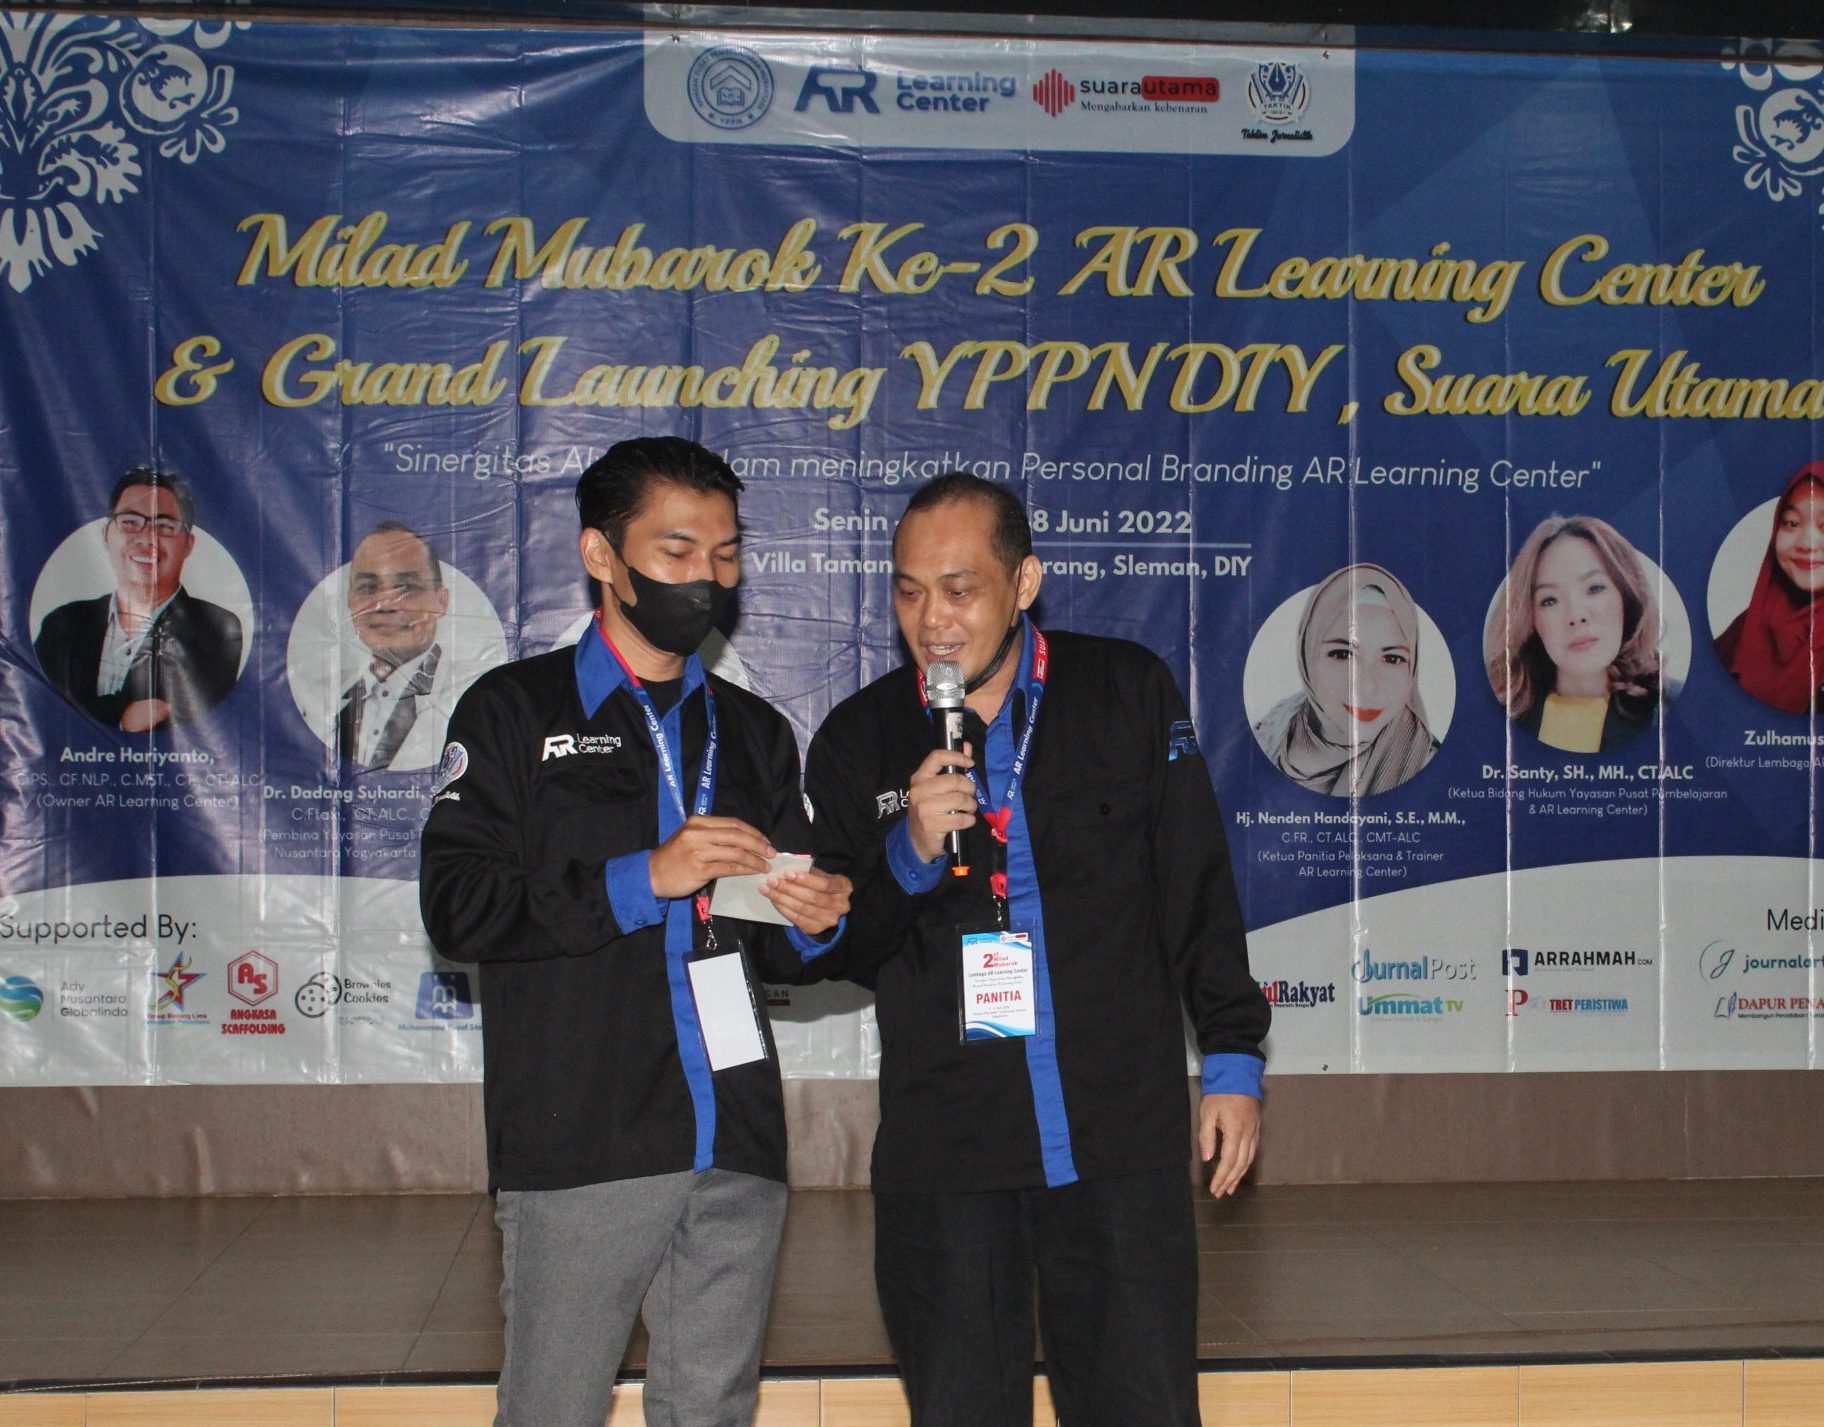 Foto: Prosesi pembacaan Award oleh Coach Yuan dan Coach Dadang. Kenangan Milad Mubarak AR Learning Center/Suara Utama ID. (Mas Andre Hariyanto)